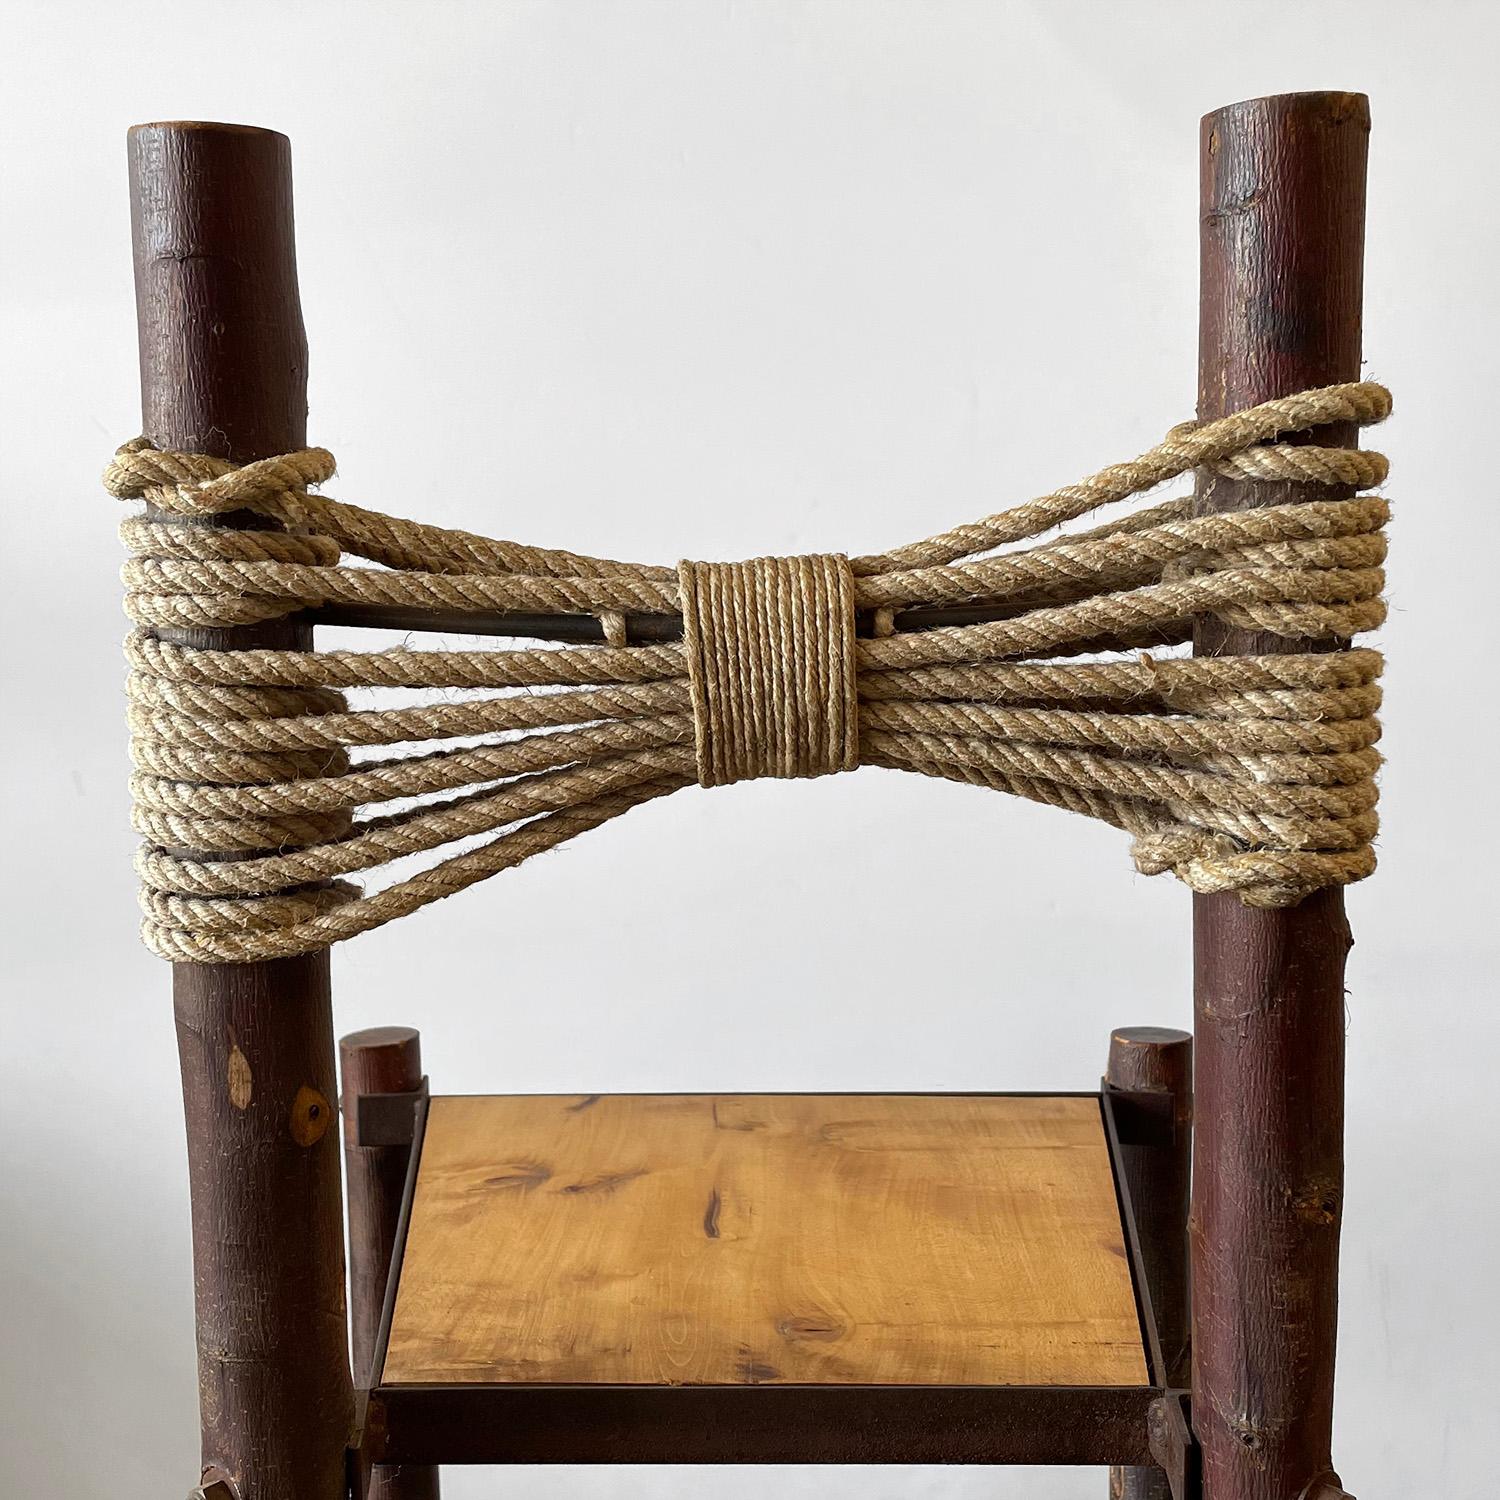 Chaise primitive française
France, début du 20e siècle
Fabrication artisanale, aspect et toucher rustiques
Le cadre de la chaise est en bois brut
Le support dorsal Bowtie est constitué d'une corde tressée.
Patine d'âge et d'utilisation
Les deux